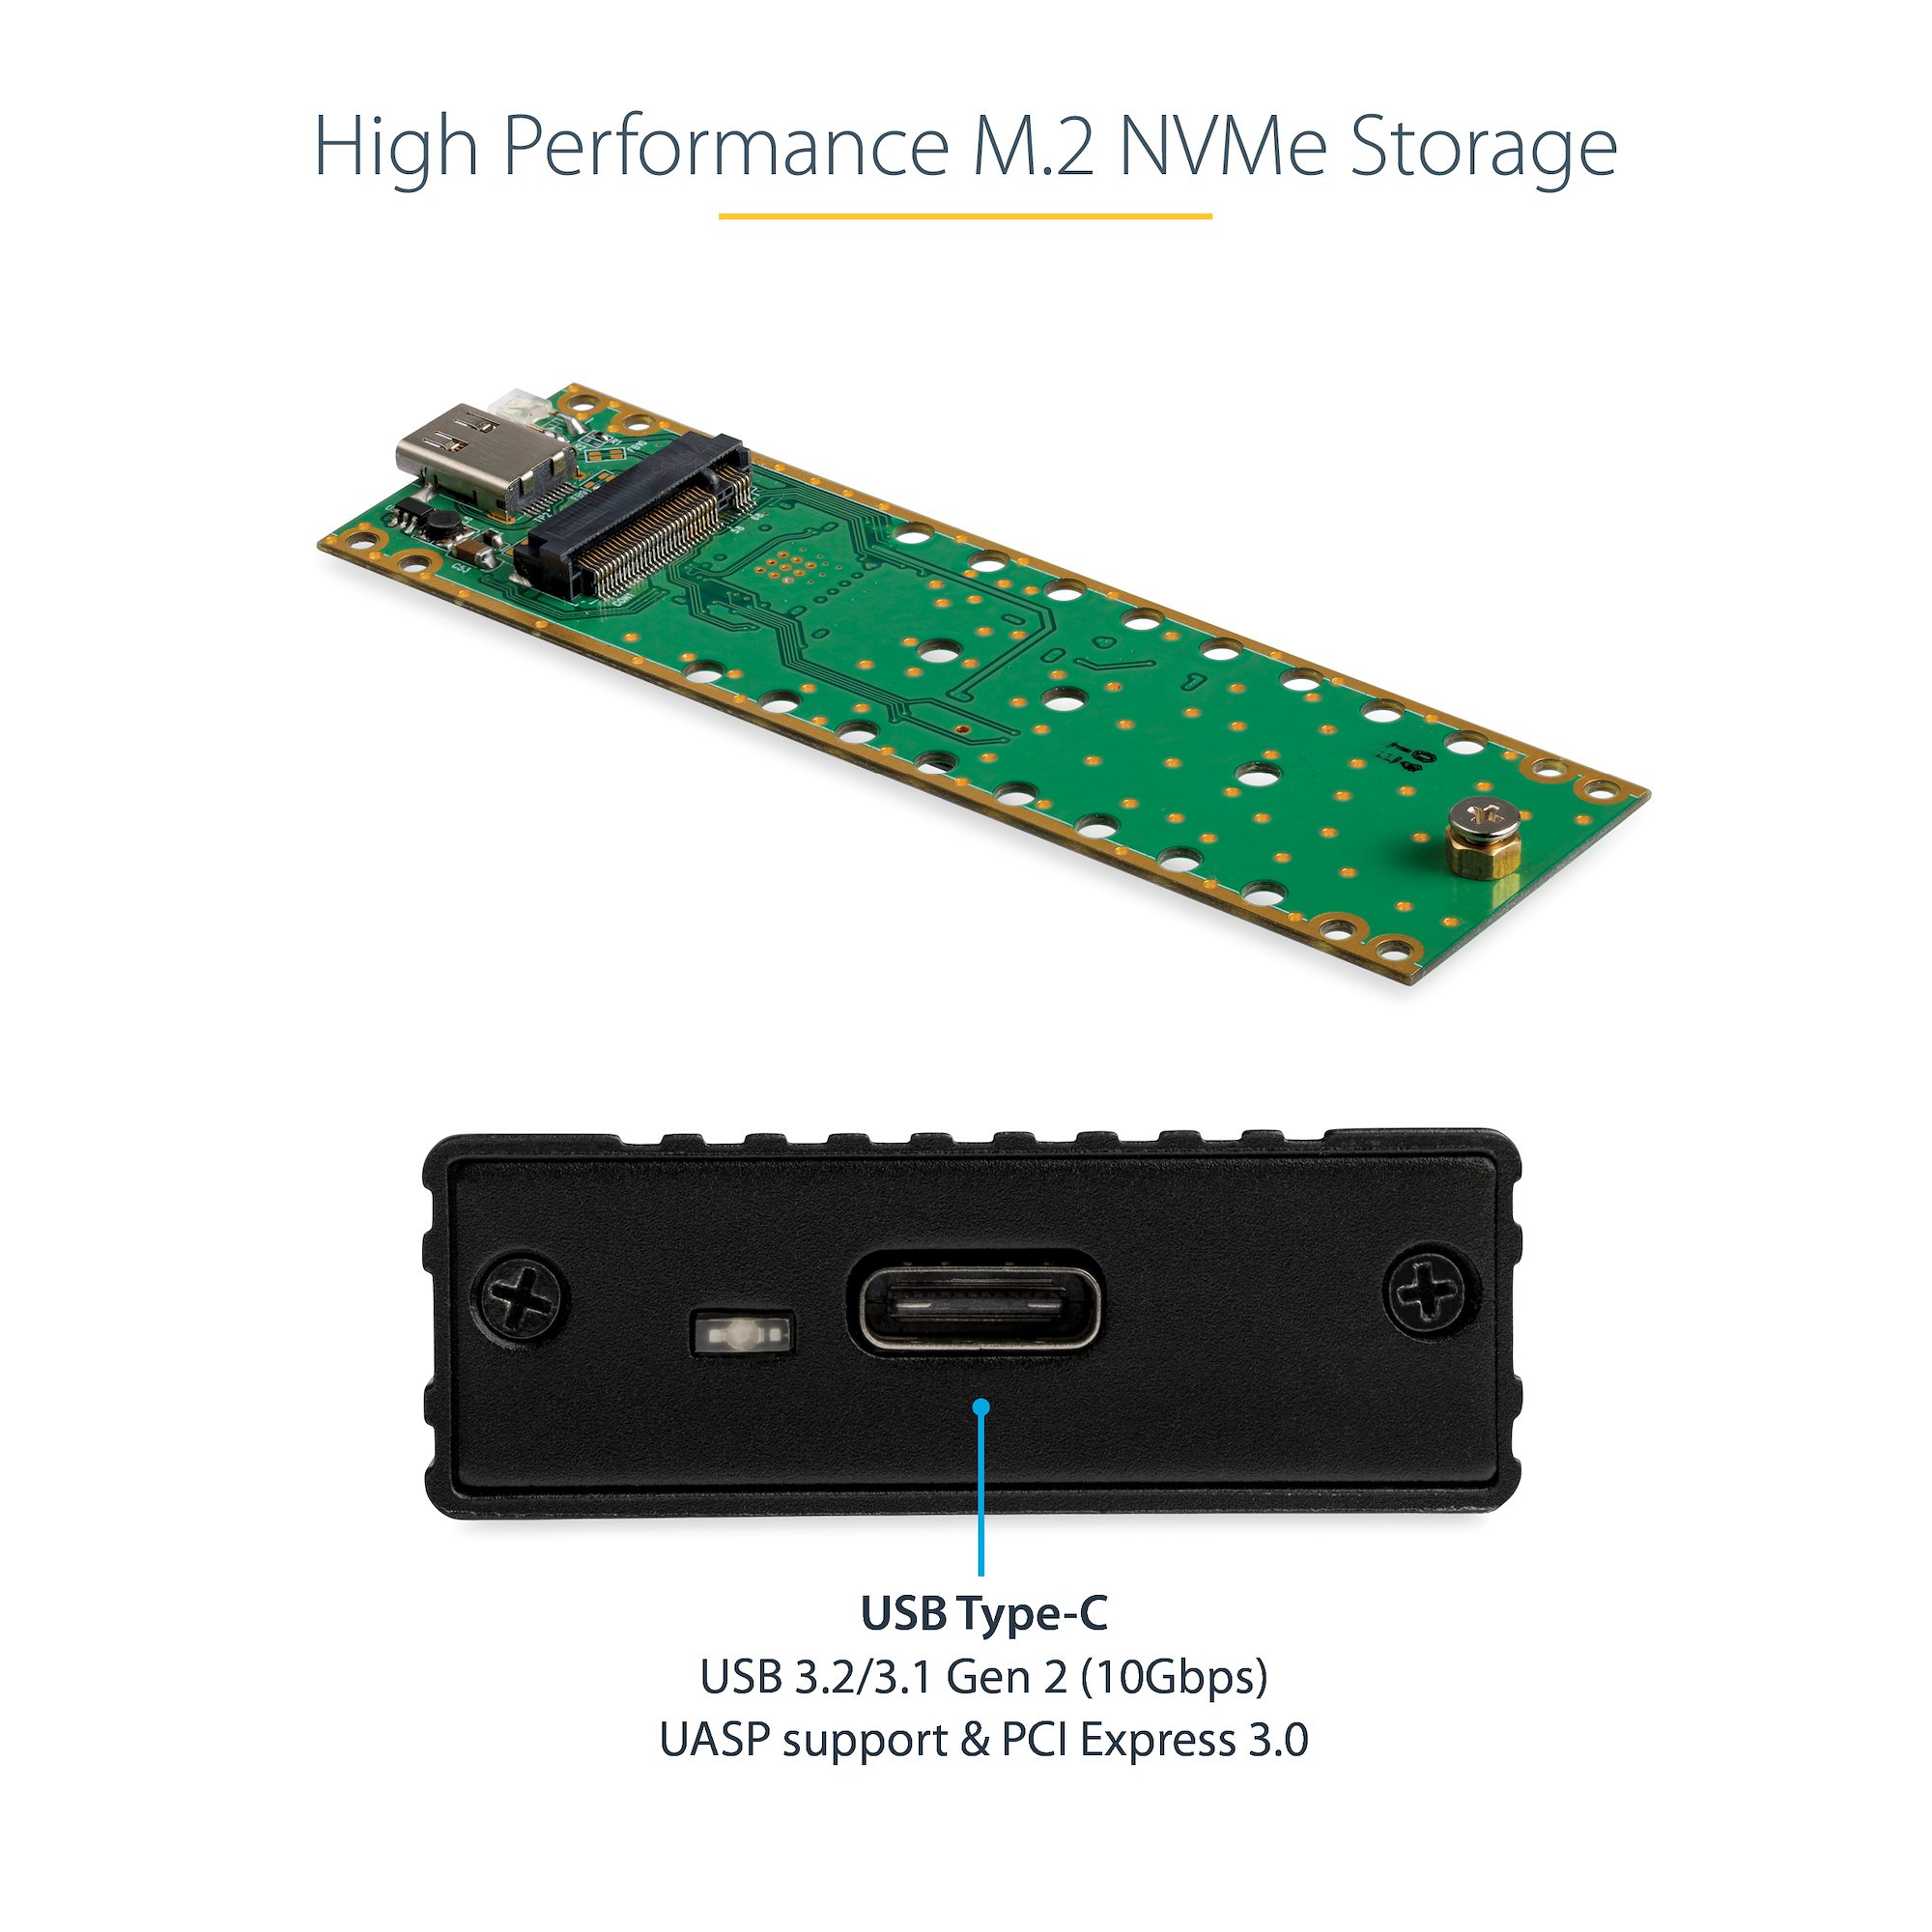 Boîtier USB 3.1 Type C vers SSD M.2 NVMe - Boîtiers de disque dur externe